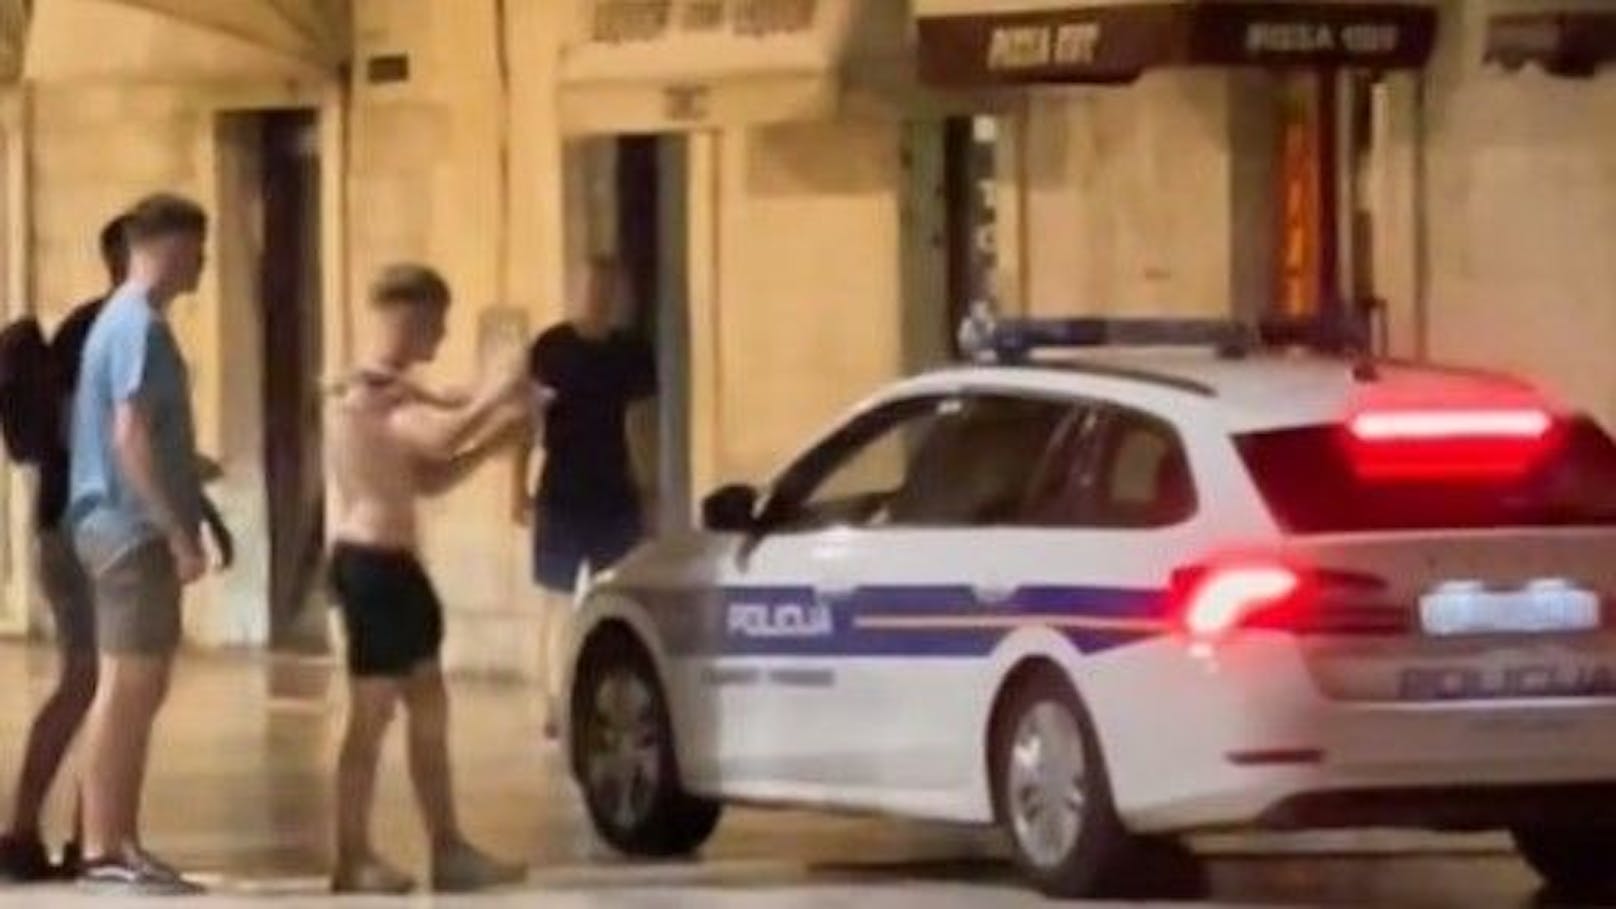 In Split (Kroatien) setzt die lokale Polizei neue Benimm-Regeln durch.